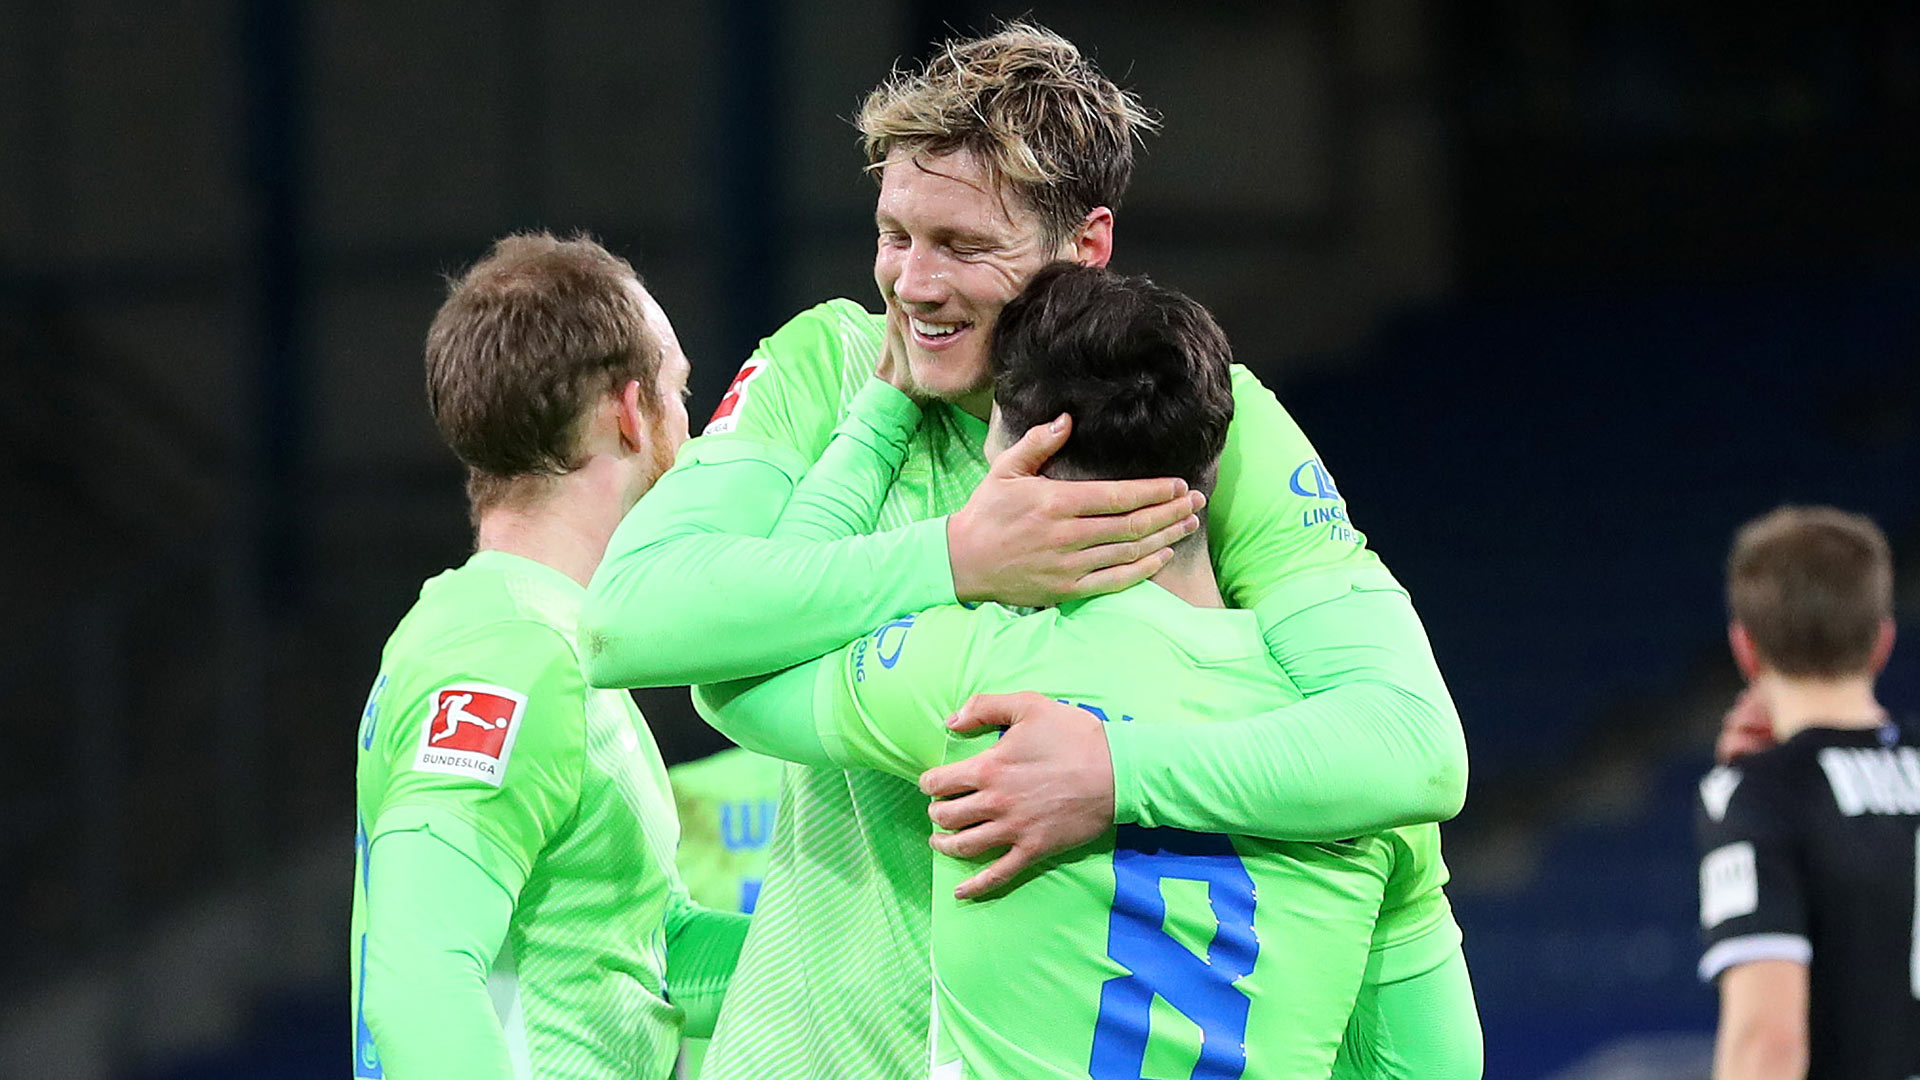 Die Spieler des VfL Wolfsburg bejubeln den Sieg.